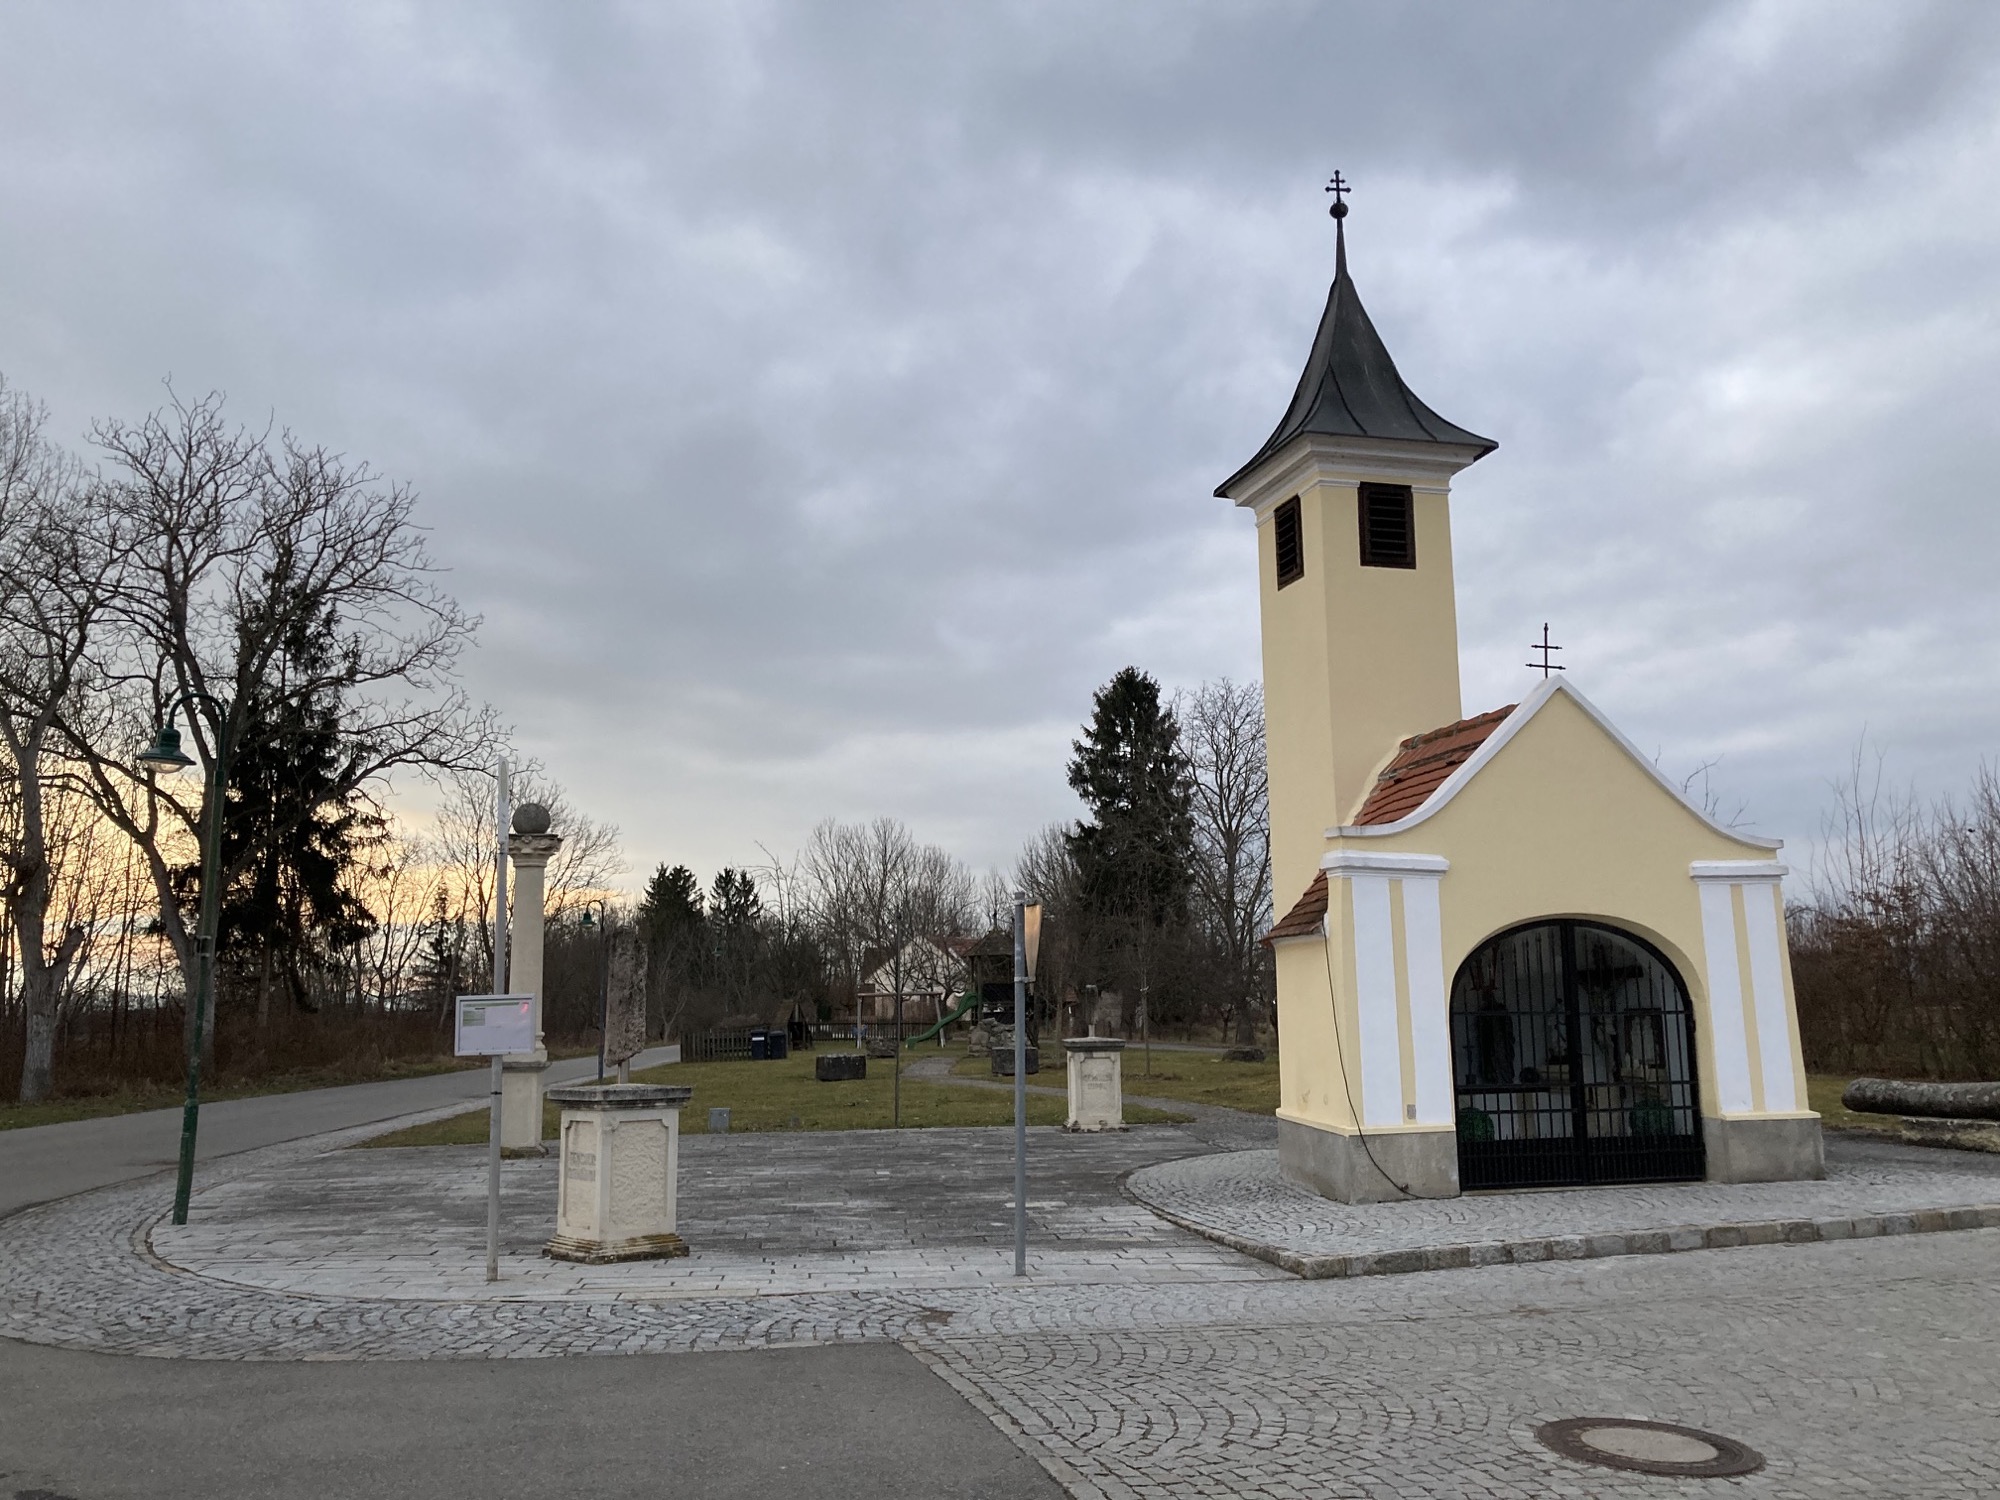 winzige Kapelle in St. Johann, gelbes Gebäude mit Gitter davor und ein kleines Türmchen